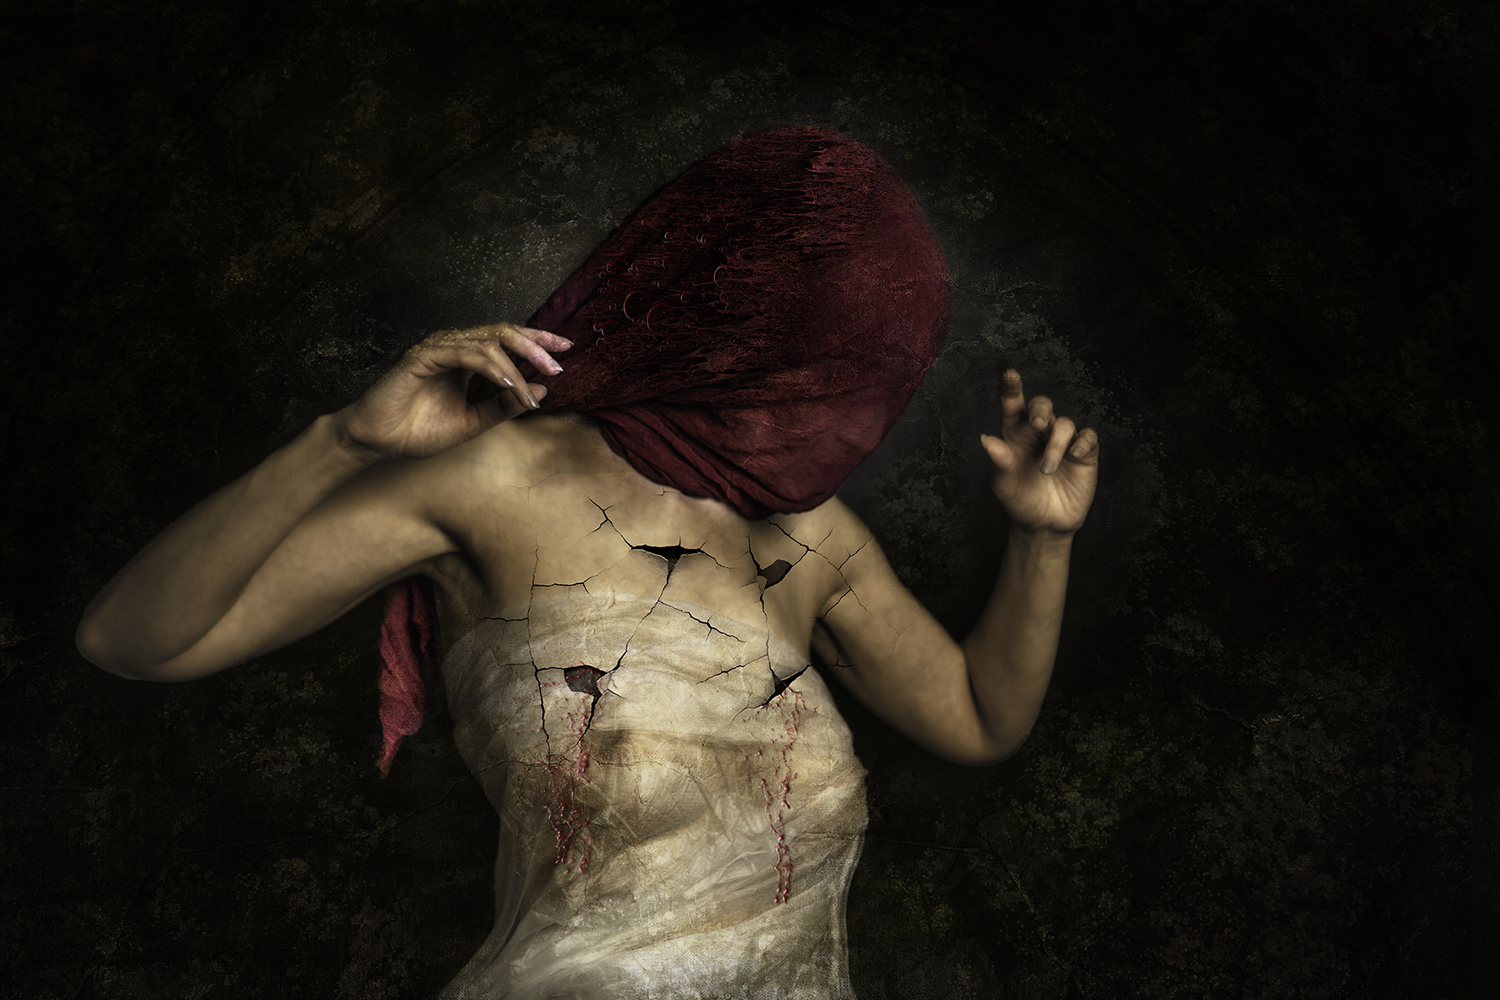 Les ames mortes,Adelaide Rubens,travail photographique,Univers sombre